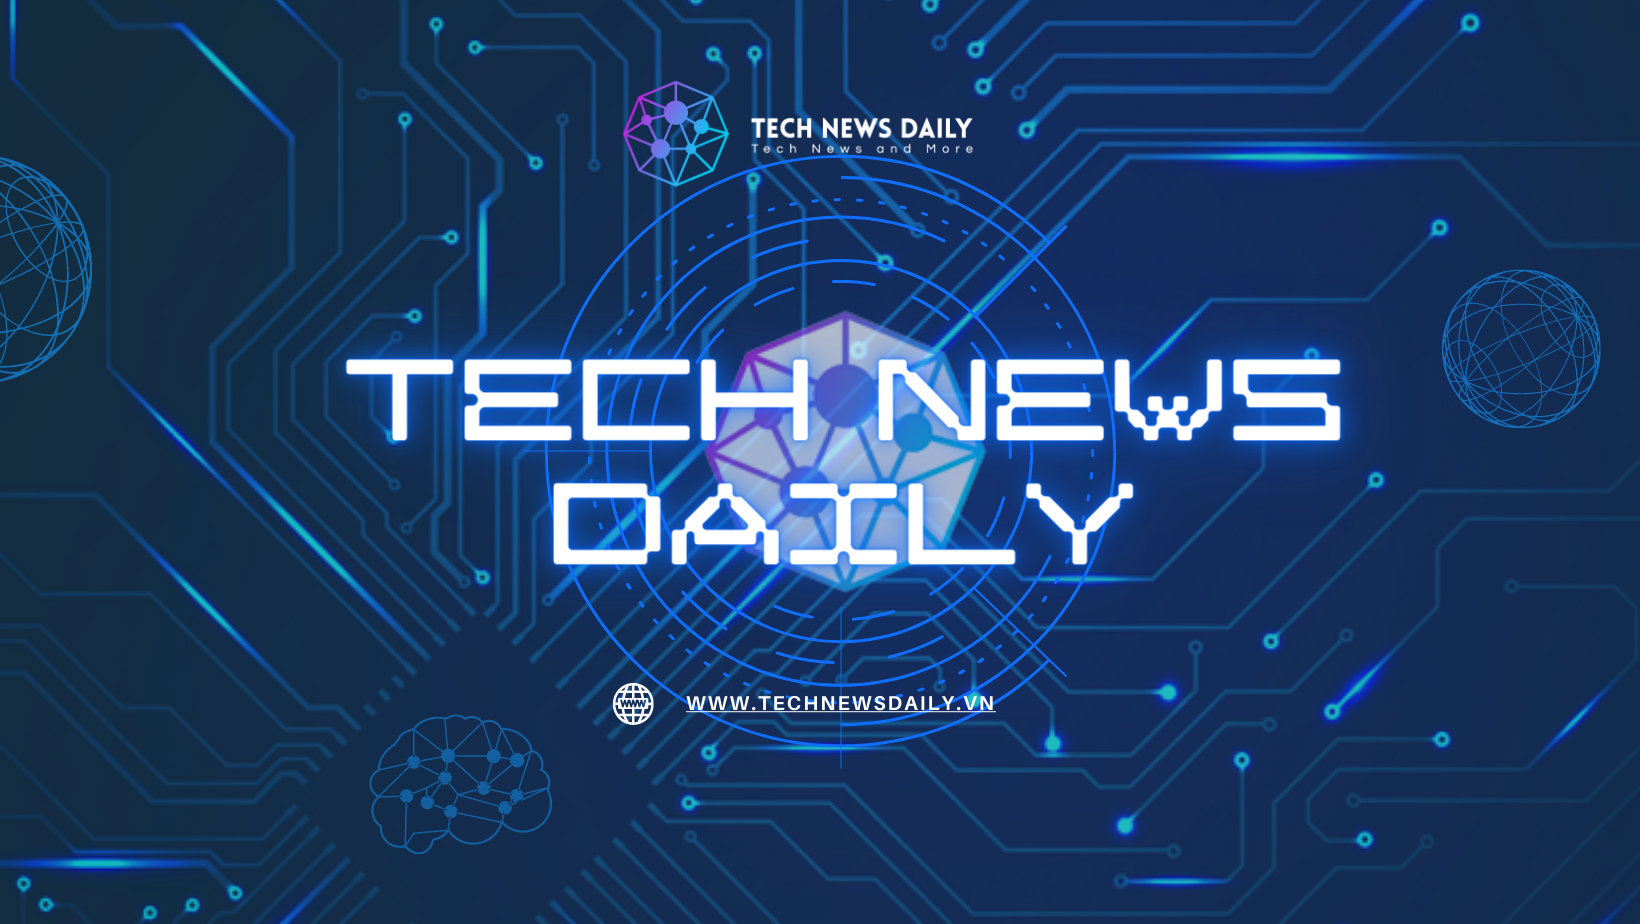 tech news daily, tin công nghệ, tin tức công nghệ